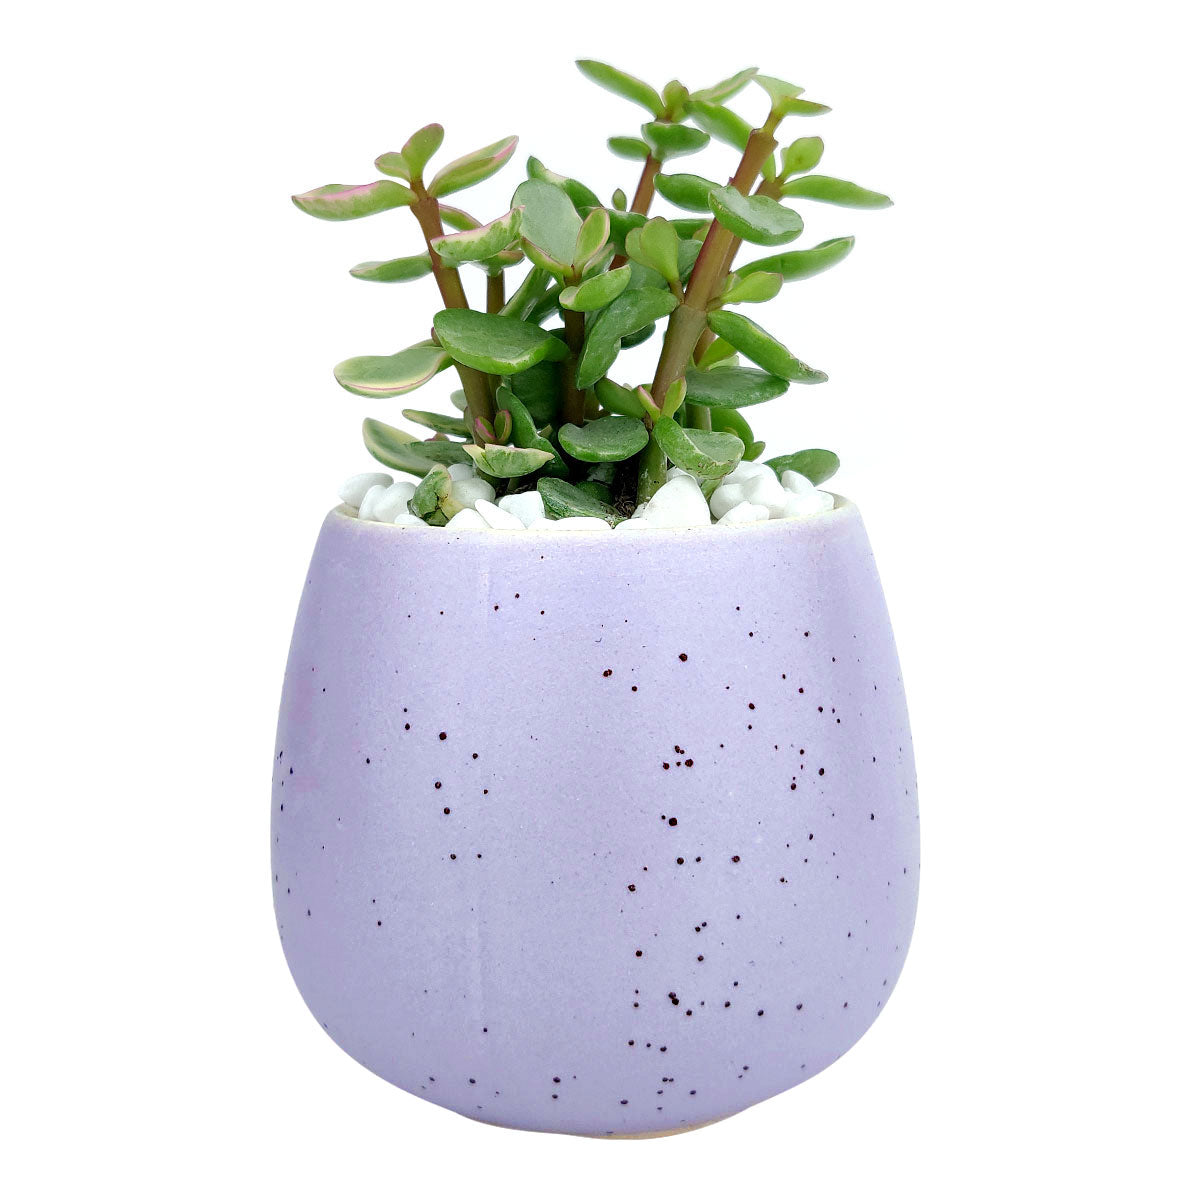 Purple Egg Pot for sale, Purple Elegant Plain Ceramic Pot for sale, Mini ceramic pot for succulents and cacti, Modern design pot, Succulent and cactus pots for sale, Succulent gift decor ideas, Elegant flower pots